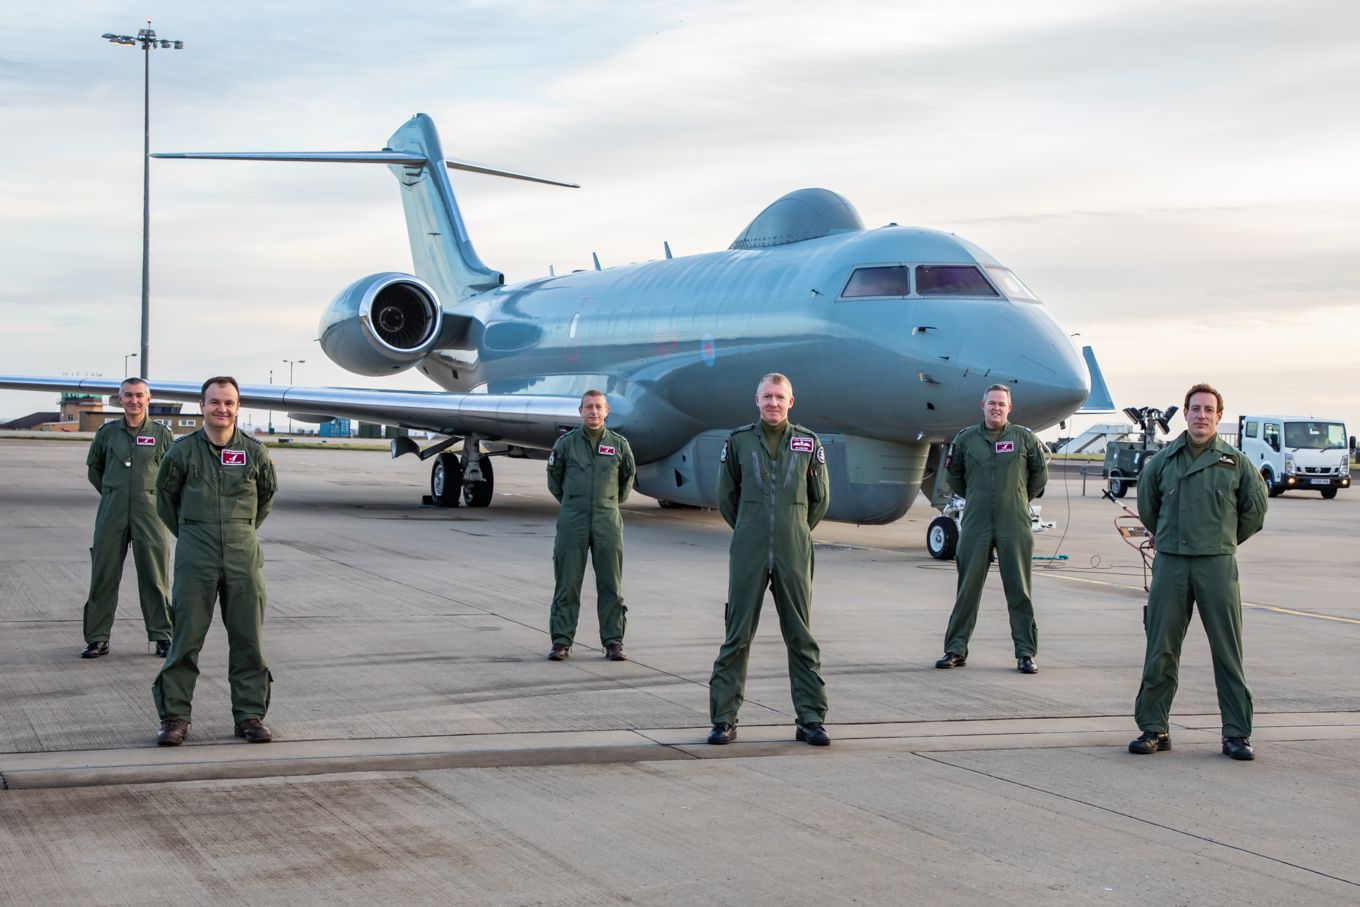 L'immagine mostra un aereo Sentinel R1 della RAF a terra con il personale della RAF in piedi davanti.